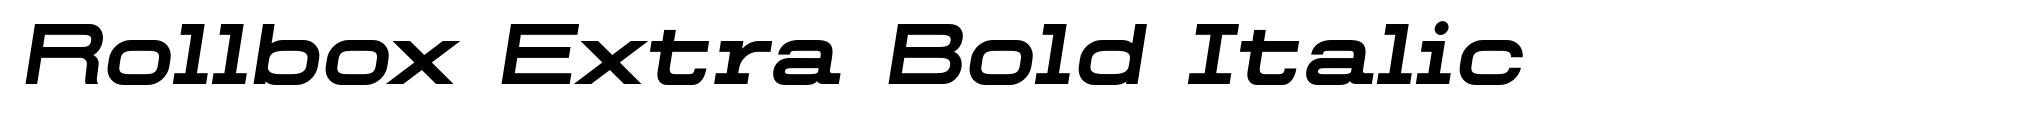 Rollbox Extra Bold Italic image